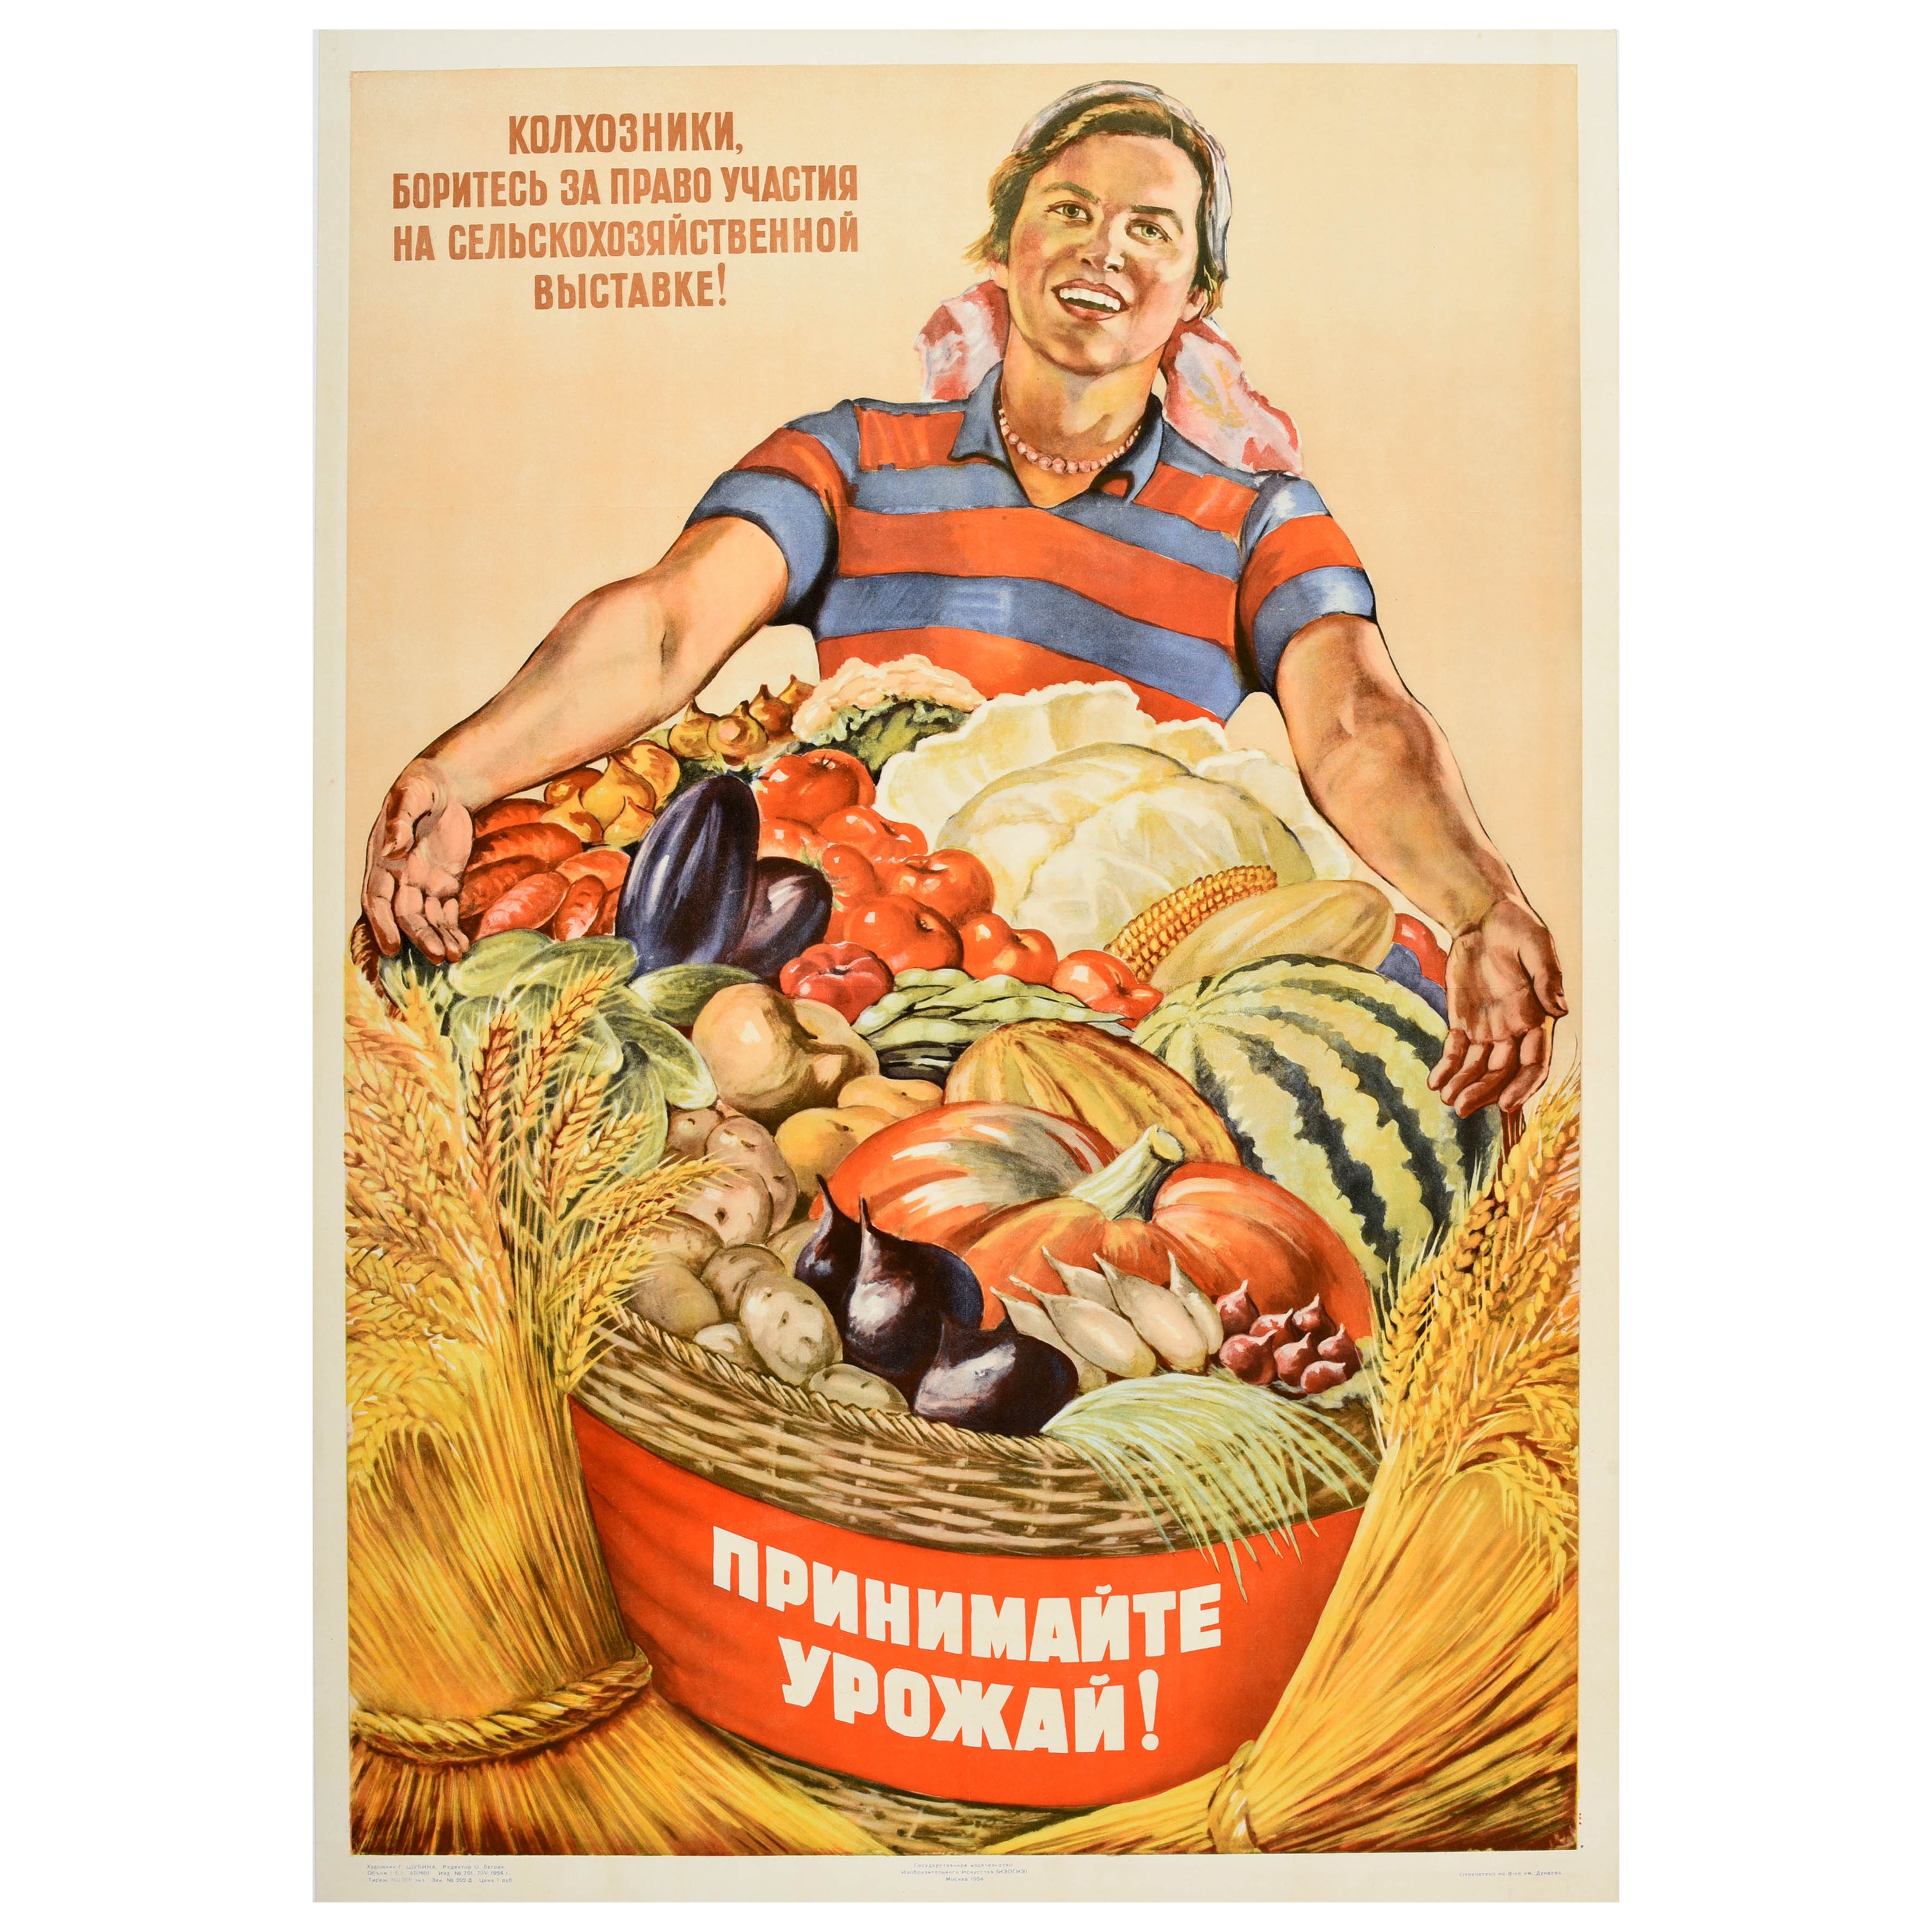 Affiche rétro originale de propagande pour la nourriture soviétique, récolte de fruits et légumes, URSS